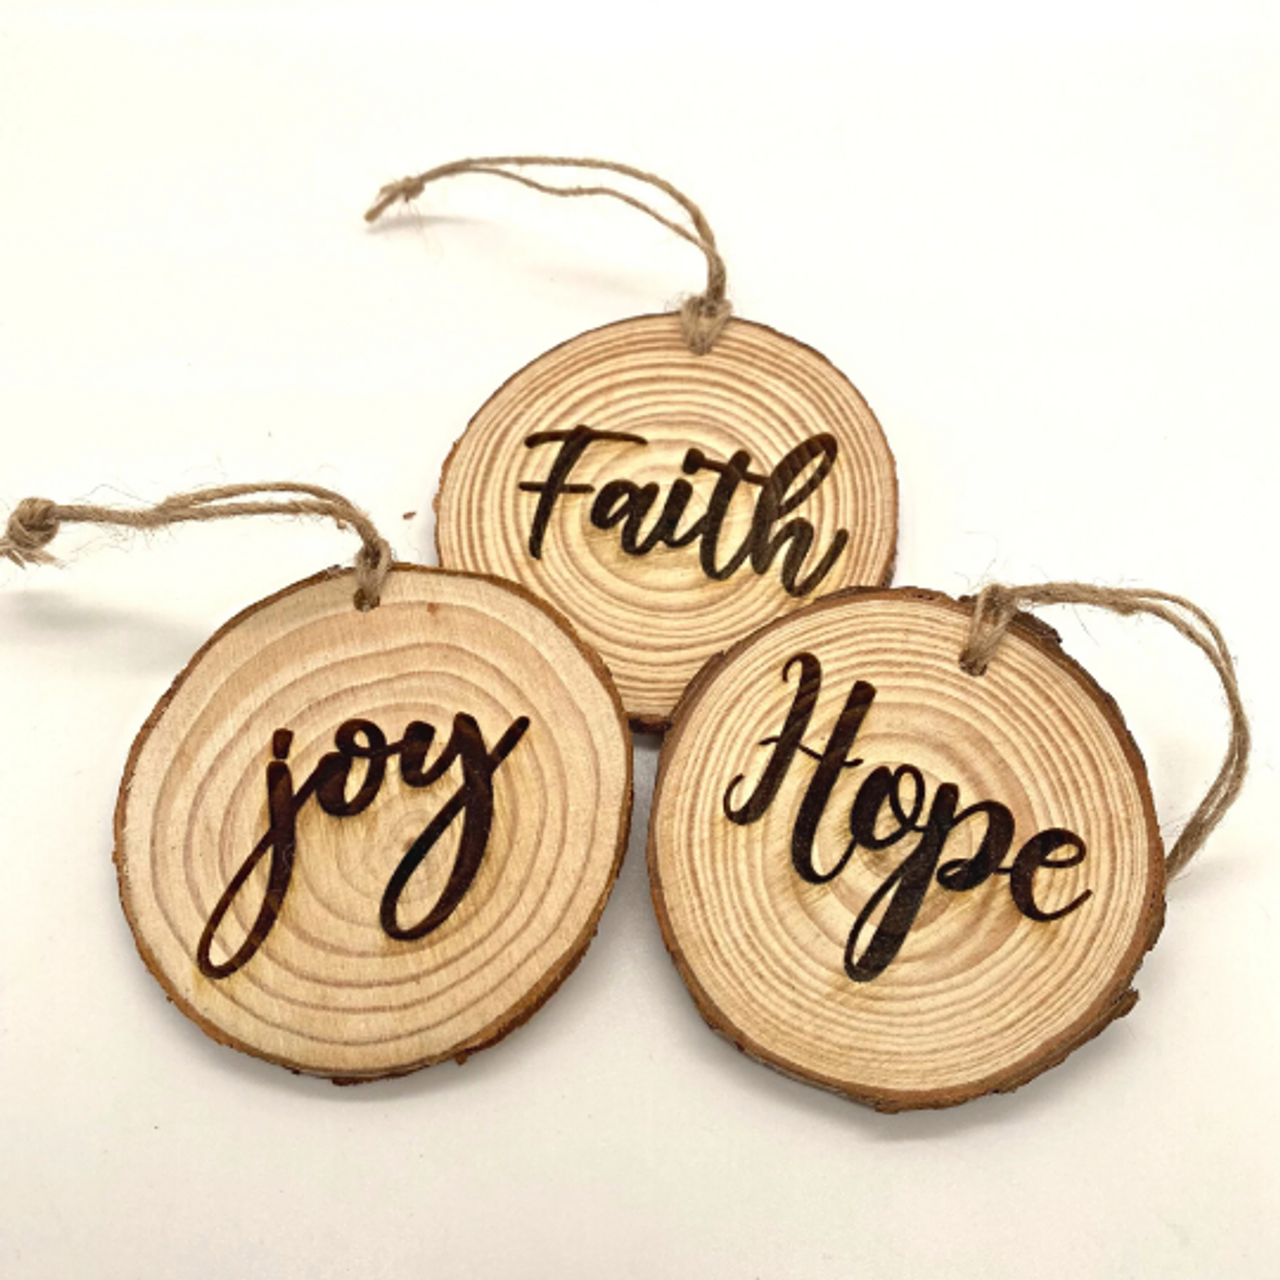 Faith Hope Joy Round Wood Ornaments